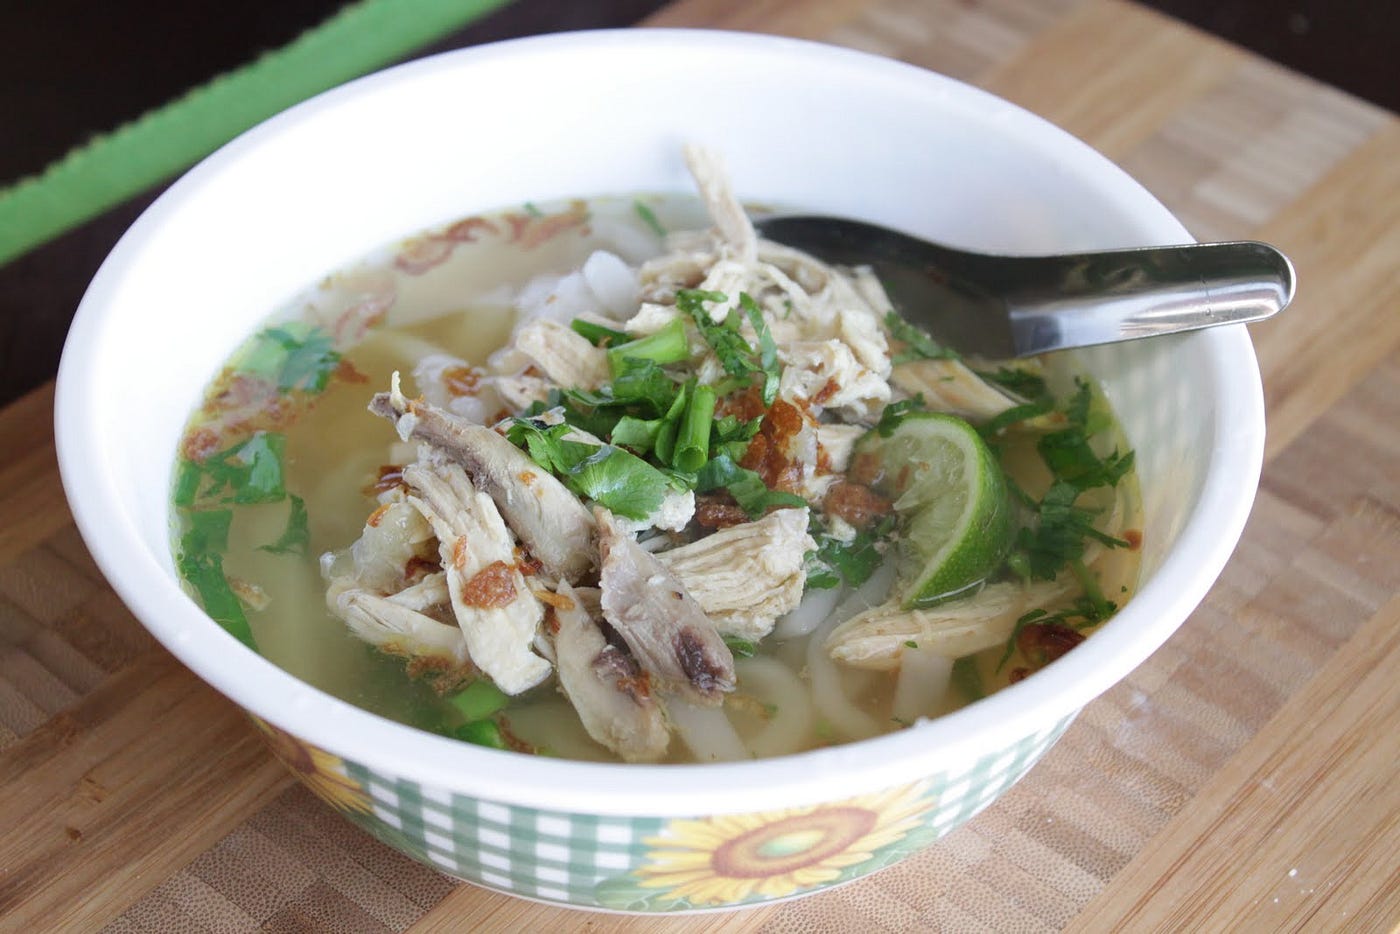 Unique to Laos' cuisine, Khao Piak Sen is just chicken or pork broth, ...